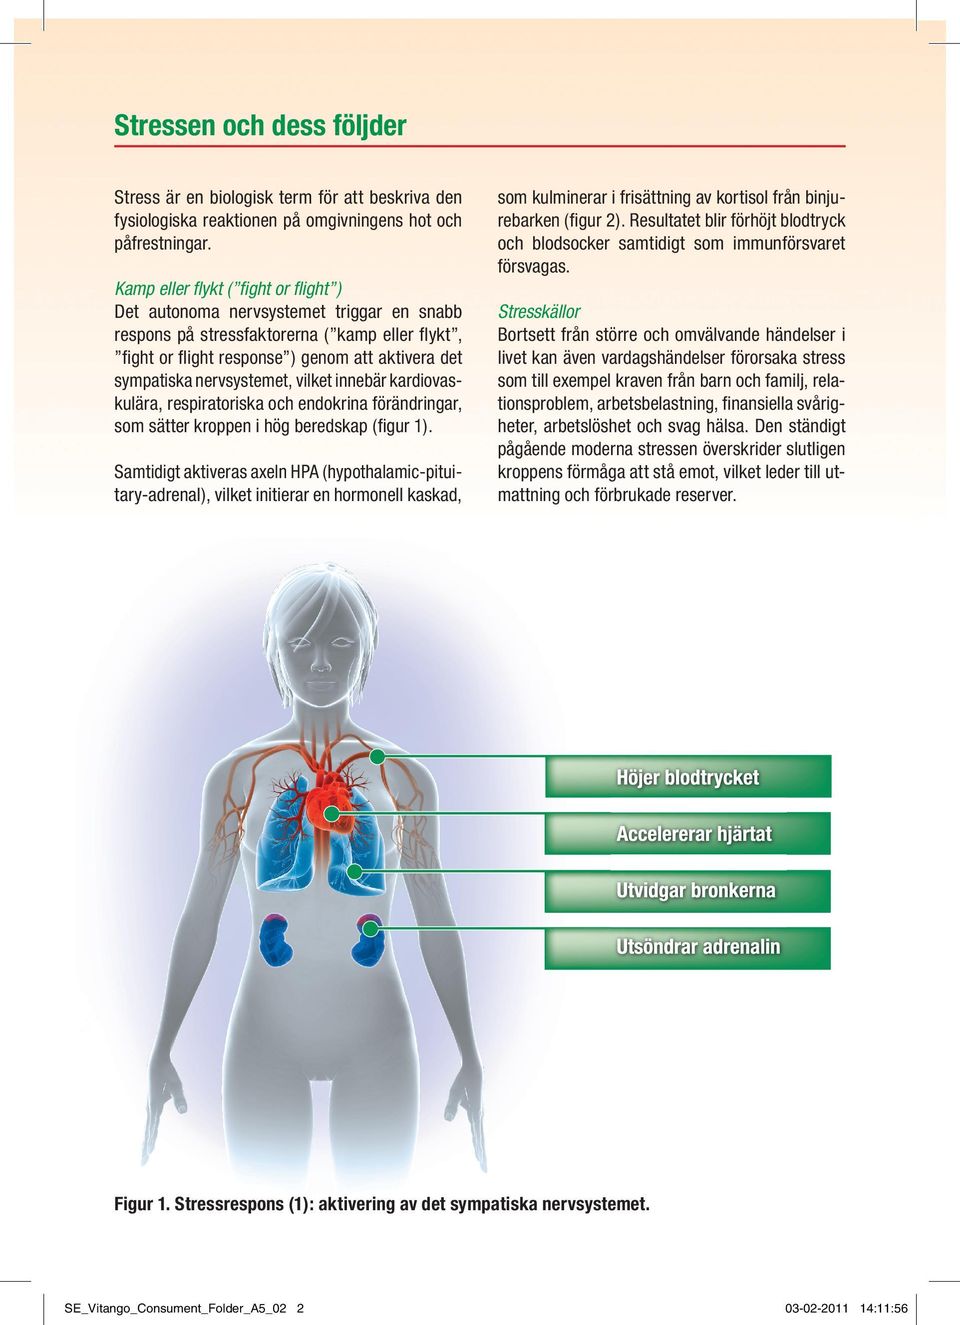 nervsystemet, vilket innebär kardiovaskulära, respiratoriska och endokrina förändringar, som sätter kroppen i hög beredskap (figur 1).